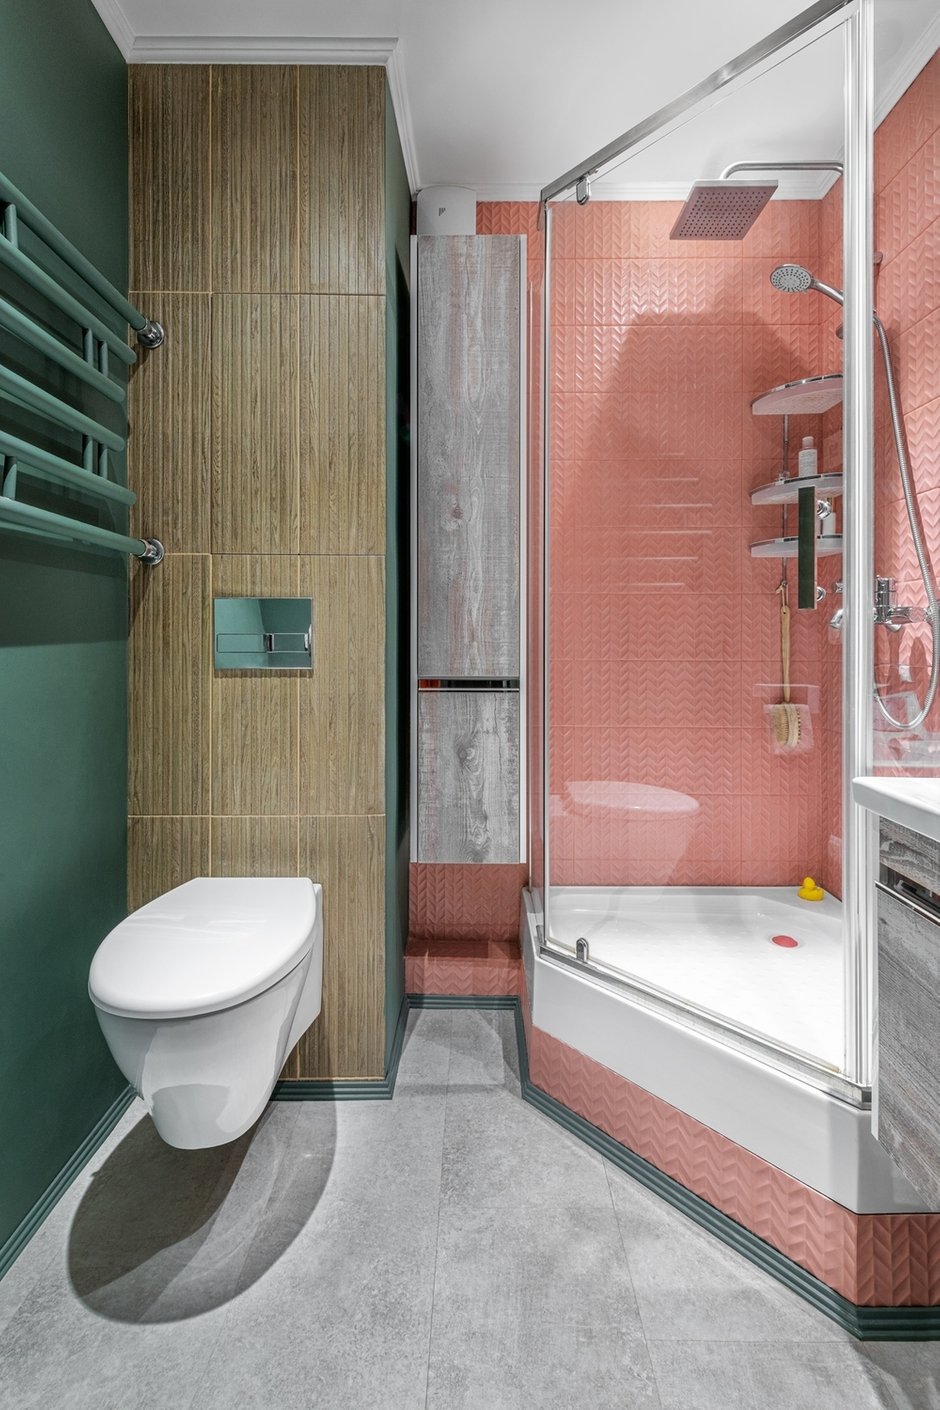 В ванной использовали два цвета стен: зеленый и розовый. Несколько видов плитки и краска отлично сочетаются друг с другом.